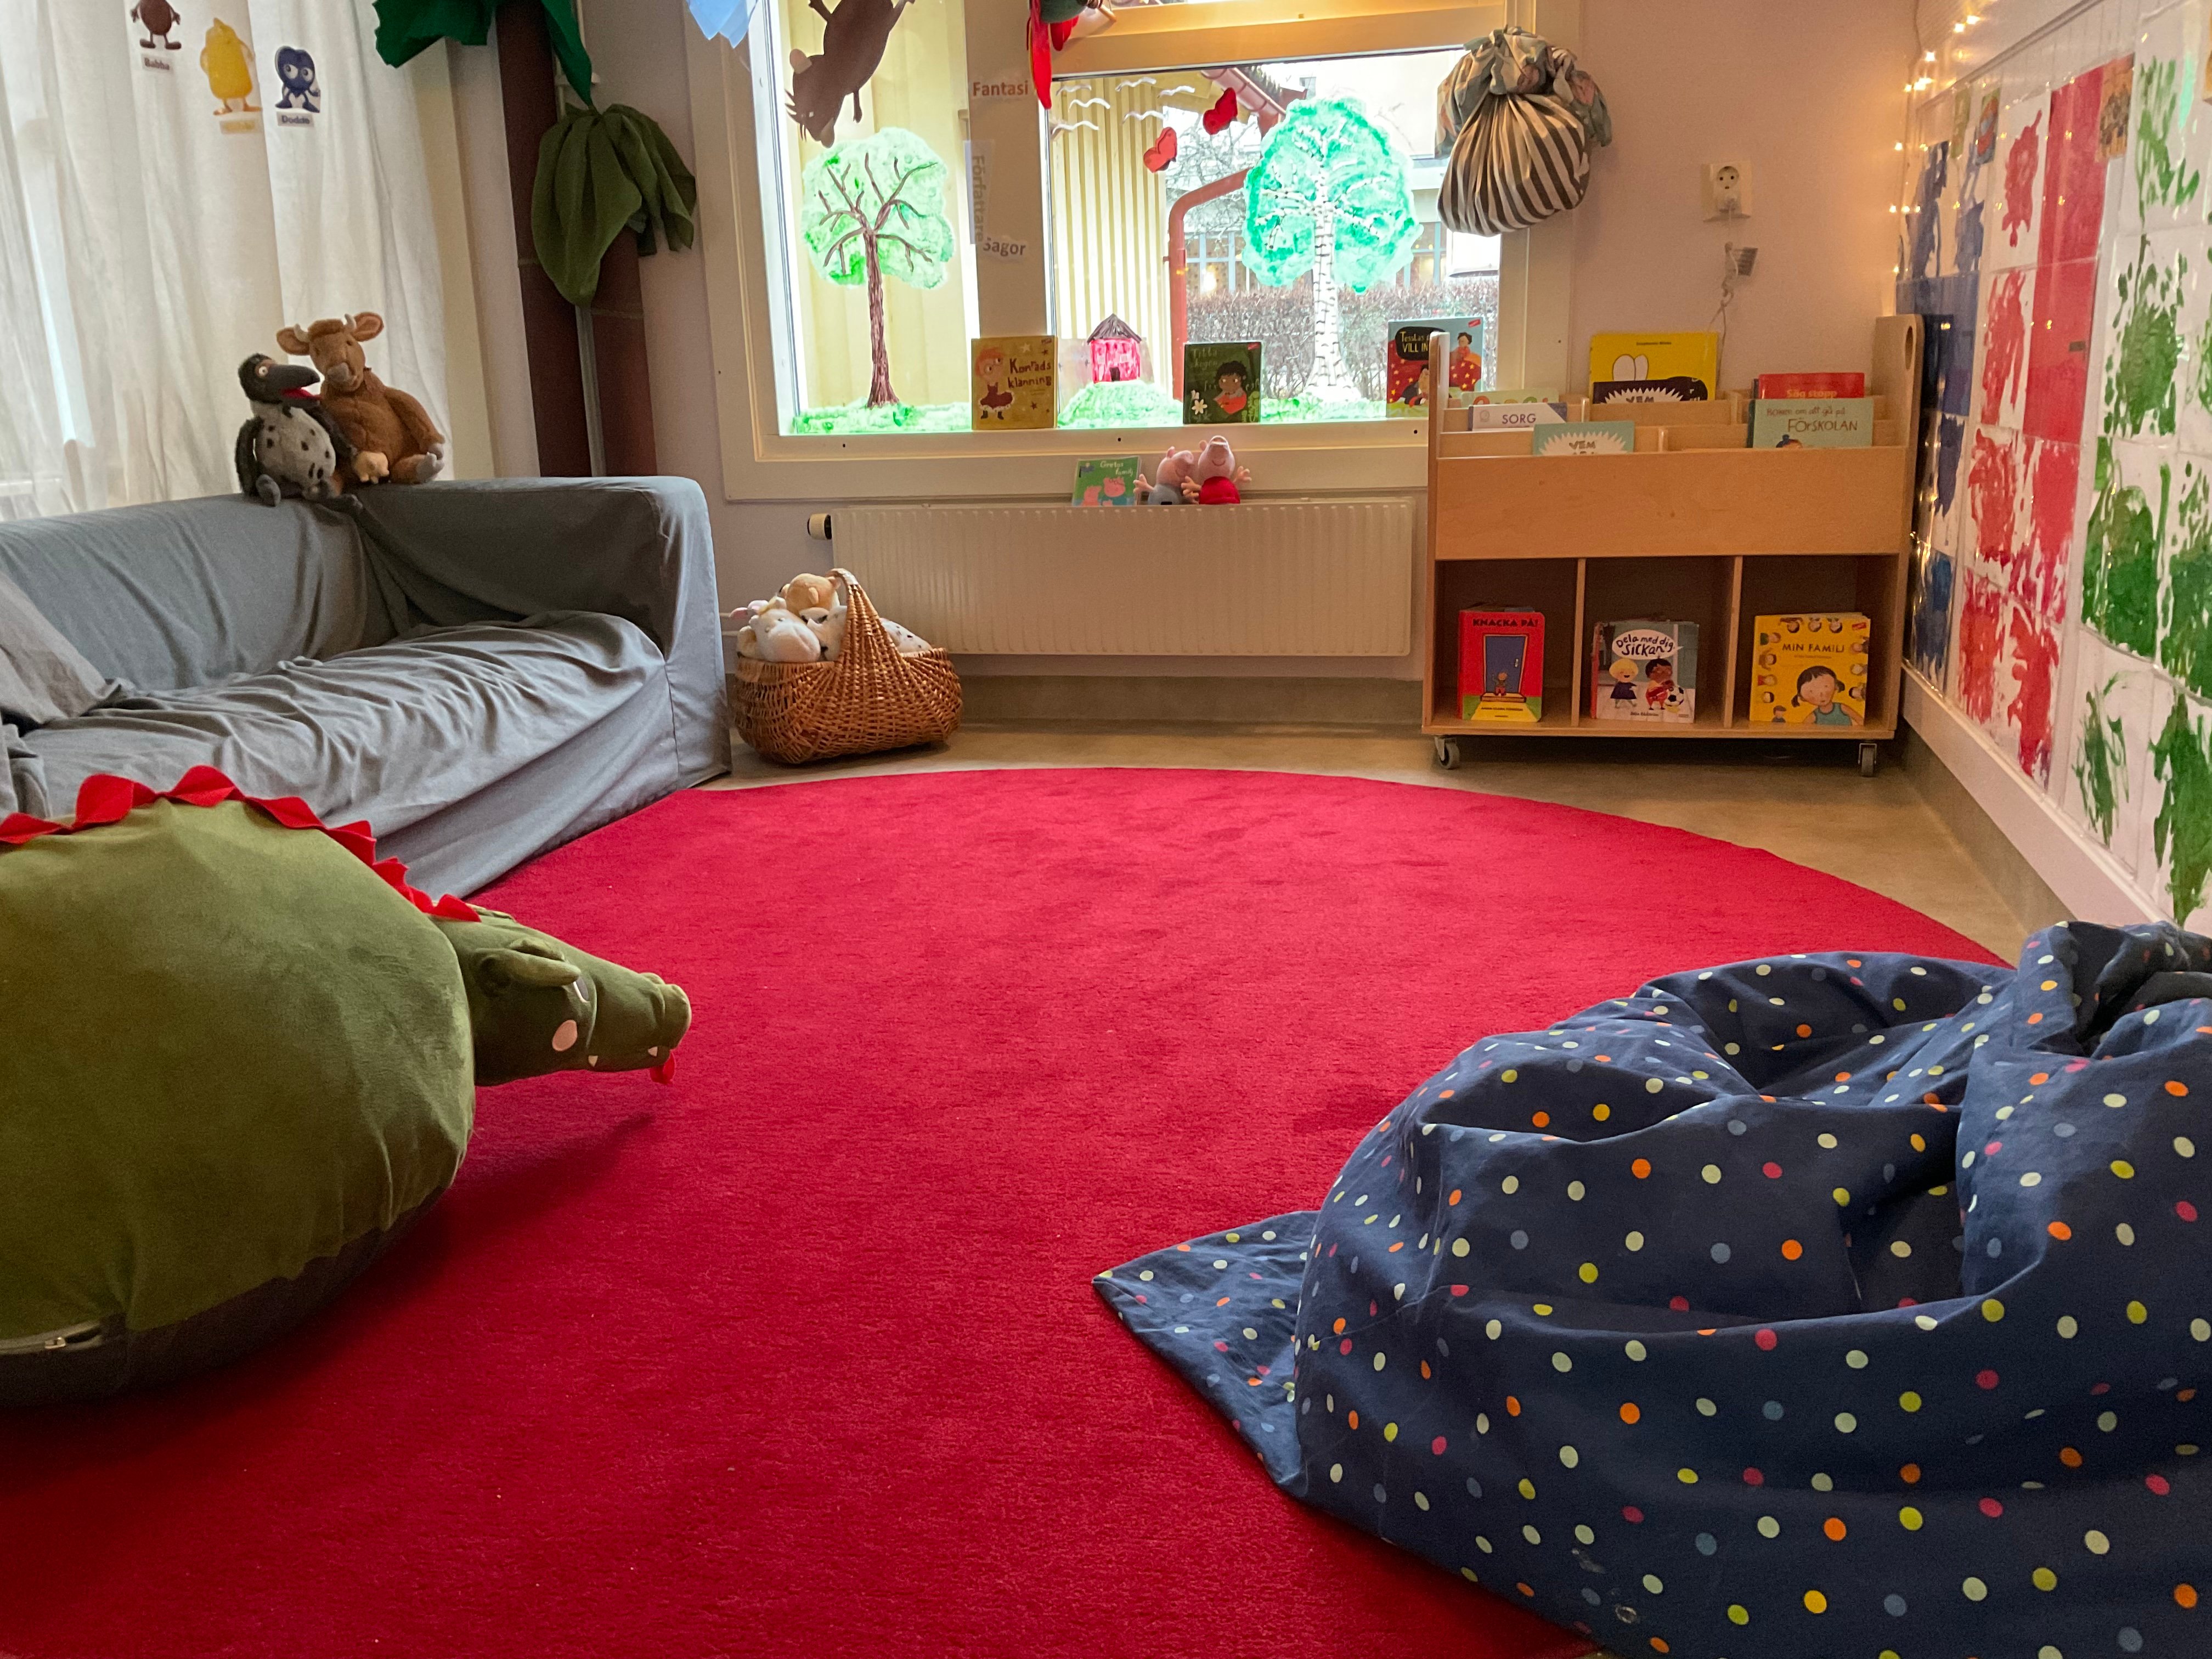 Läsmiljö med sittpuffar och soffa, röd matta på golvet